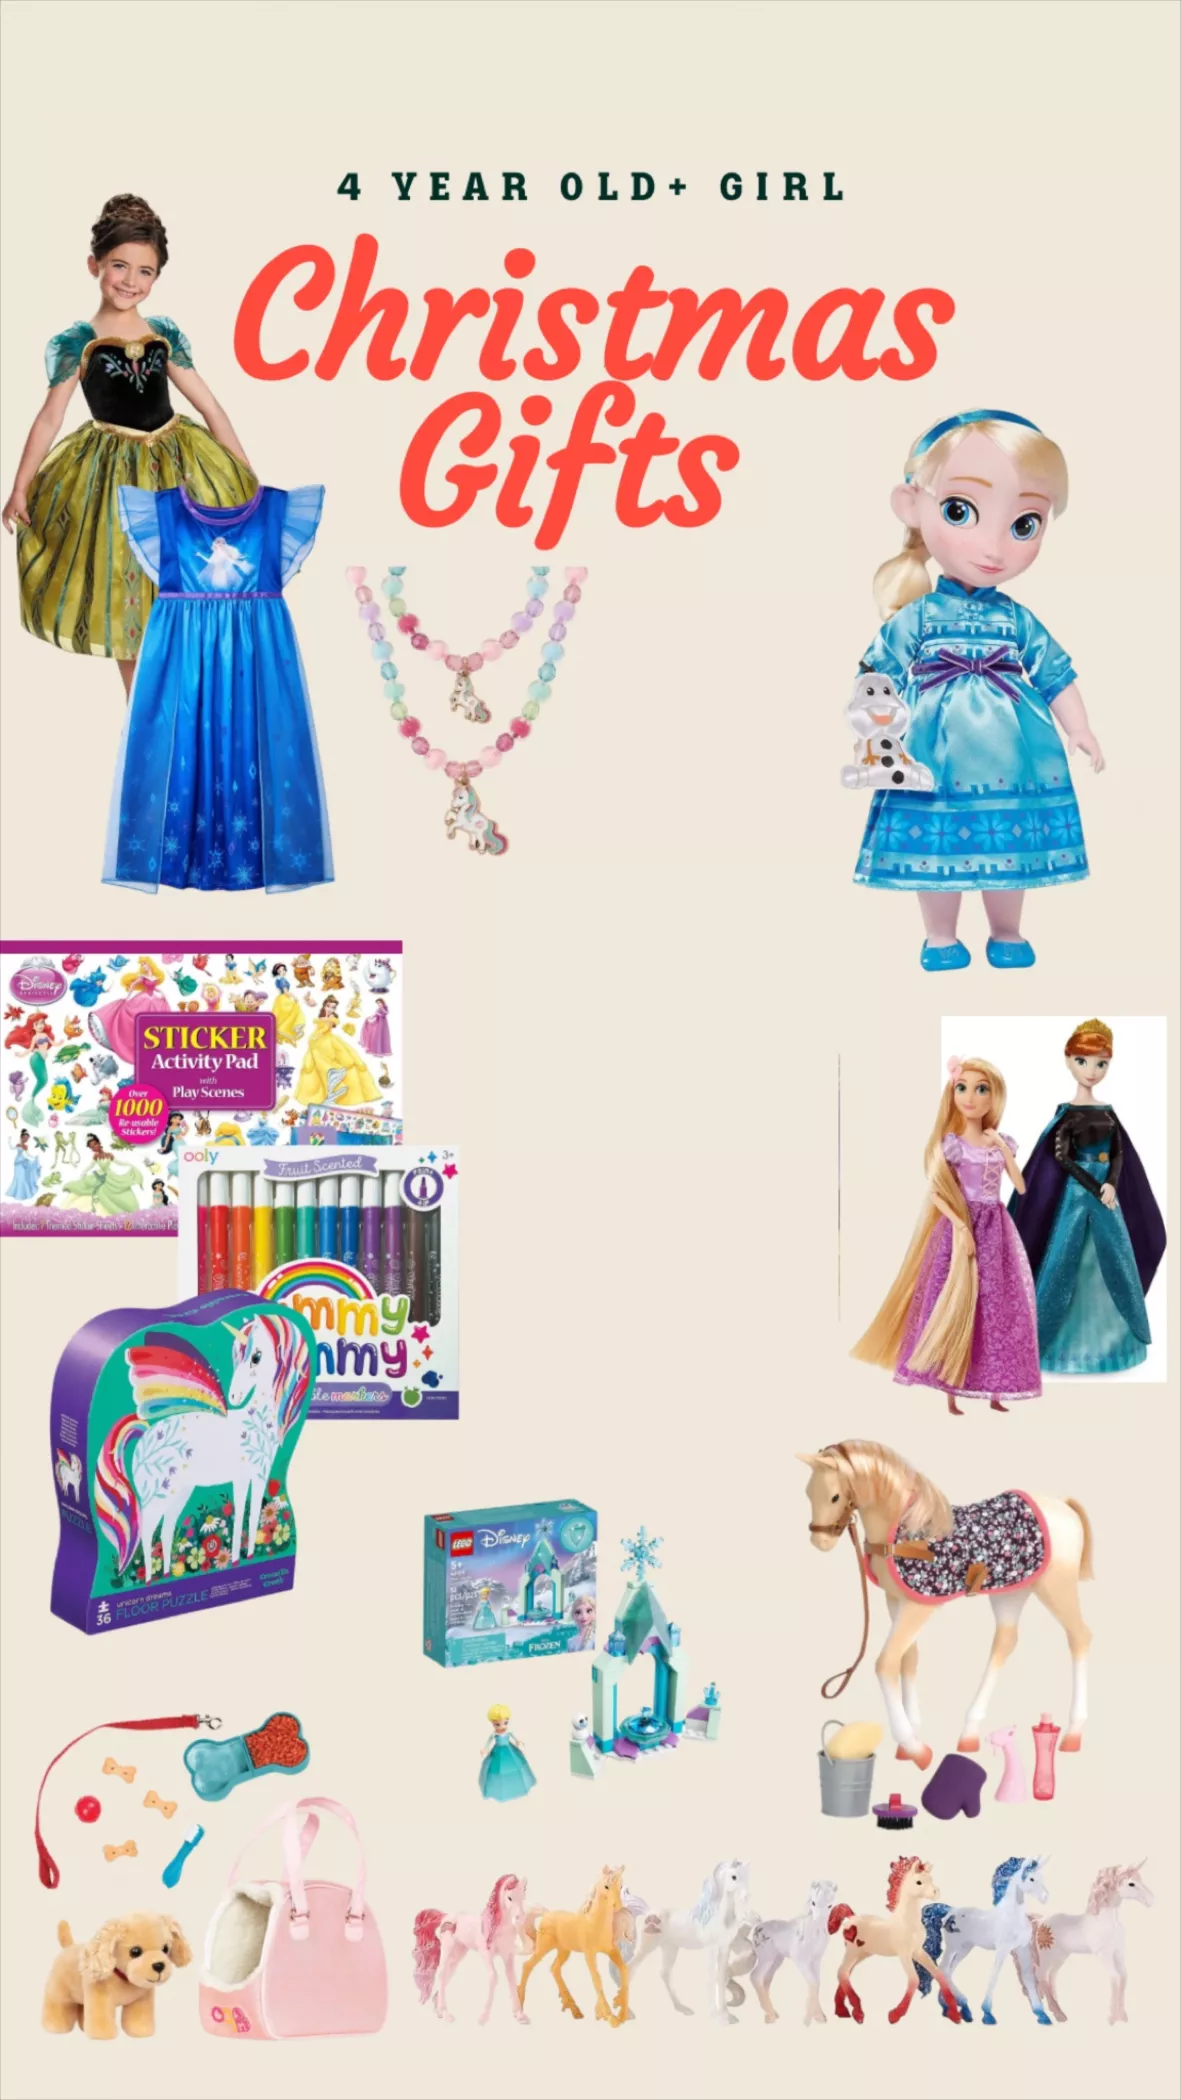 Toddler Girls' Rainbow Unicorn Bracelet And Necklace Set - Cat